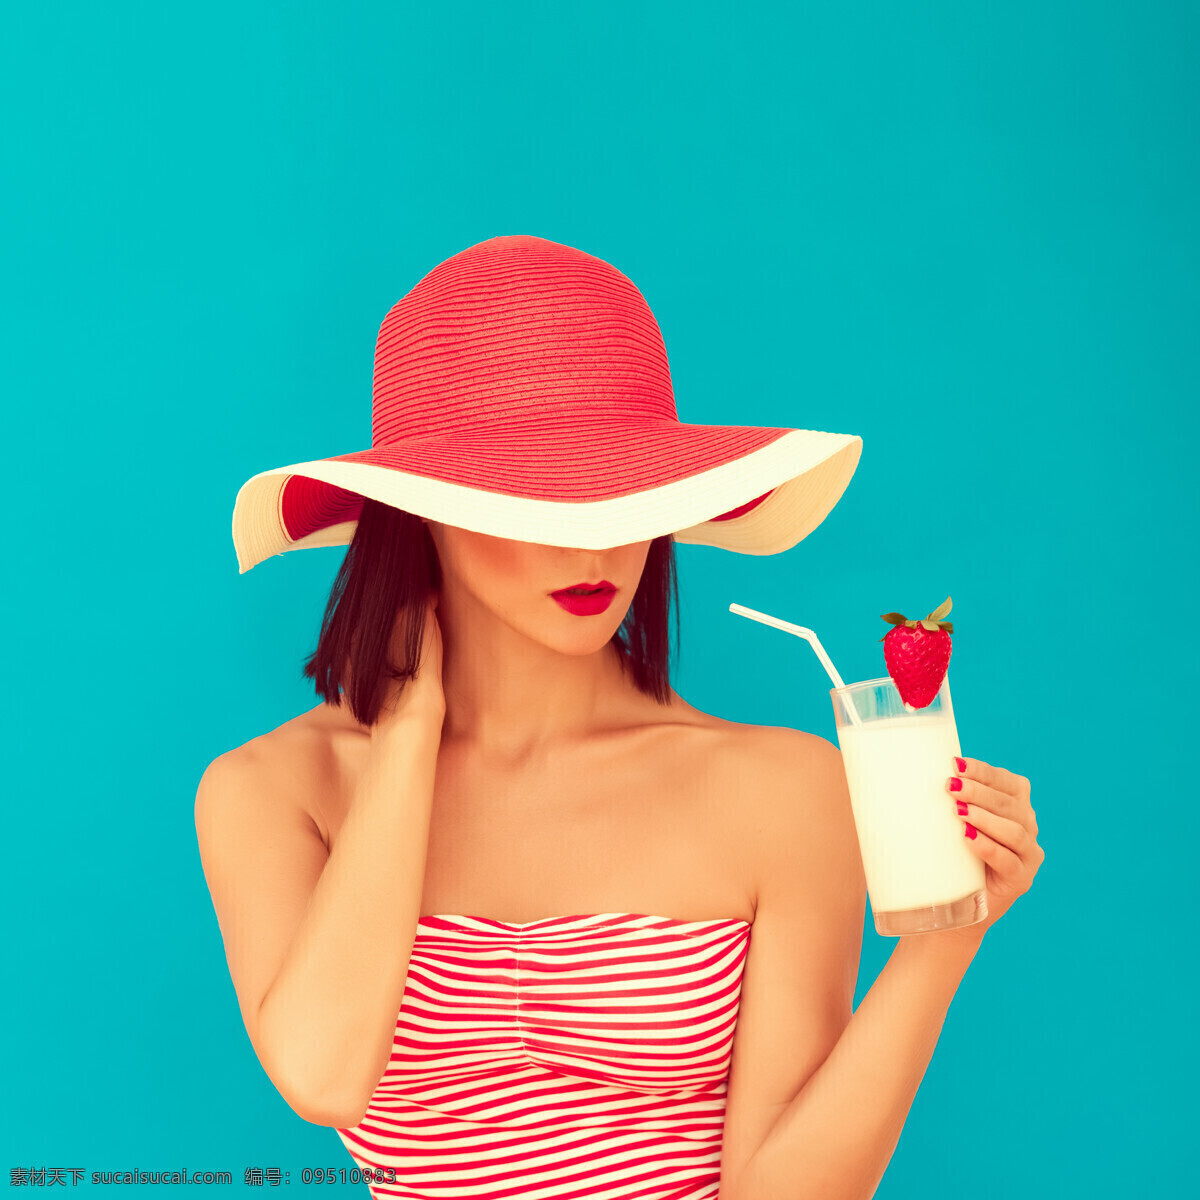 喝 果汁 美女图片 草莓 美女 外国美女 夏天 性感 帽子 墨镜 人物图片